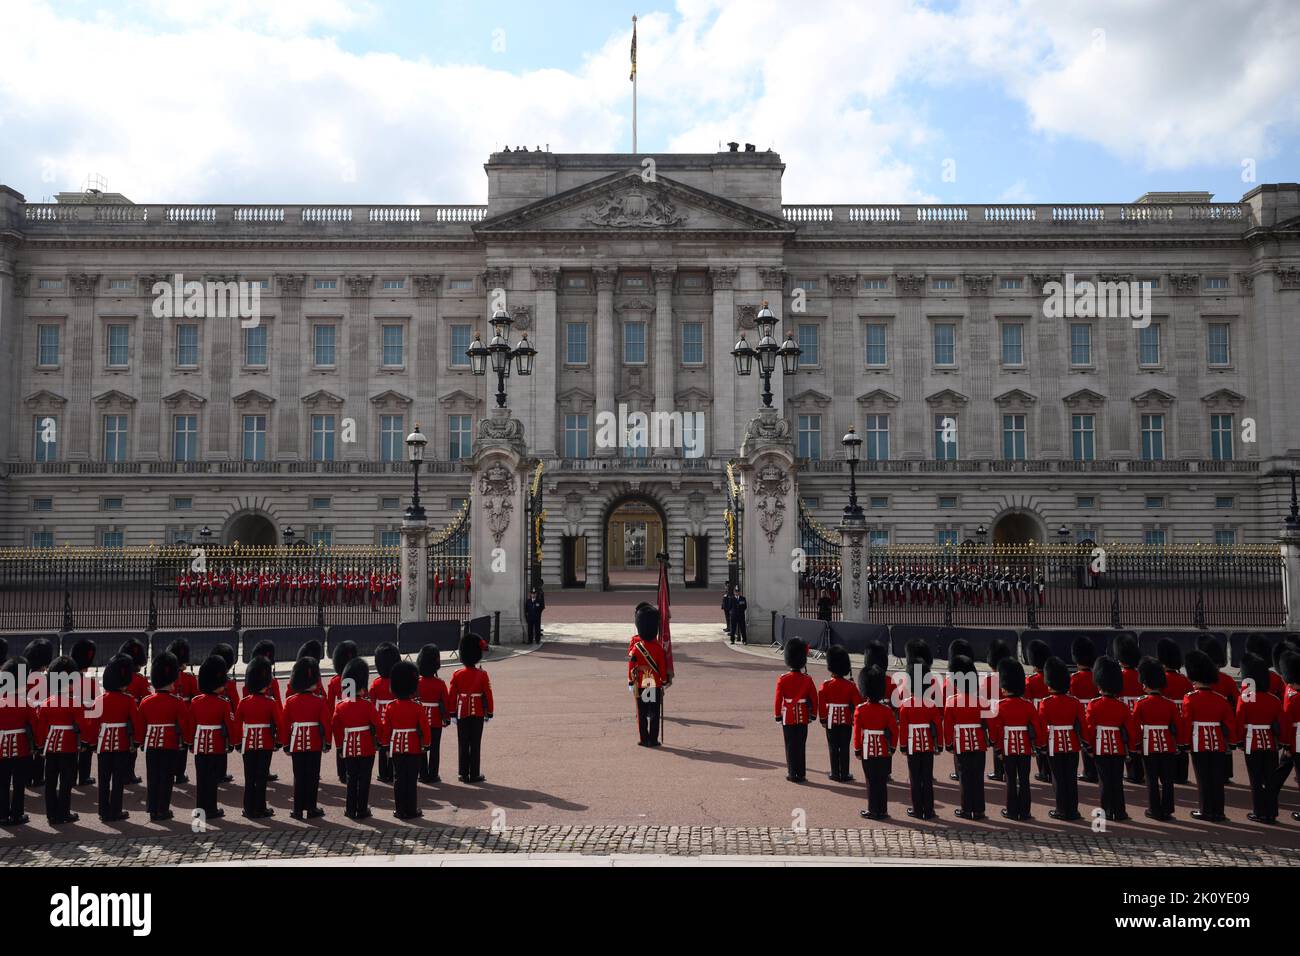 Die Coldstream Guards bereiten sich vor dem Buckingham Palace vor, bevor die feierliche Prozession des Sarges von Königin Elizabeth II. Vom Buckingham Palace zur Westminster Hall, London, stattfand. Bilddatum: Mittwoch, 14. September 2022. Stockfoto